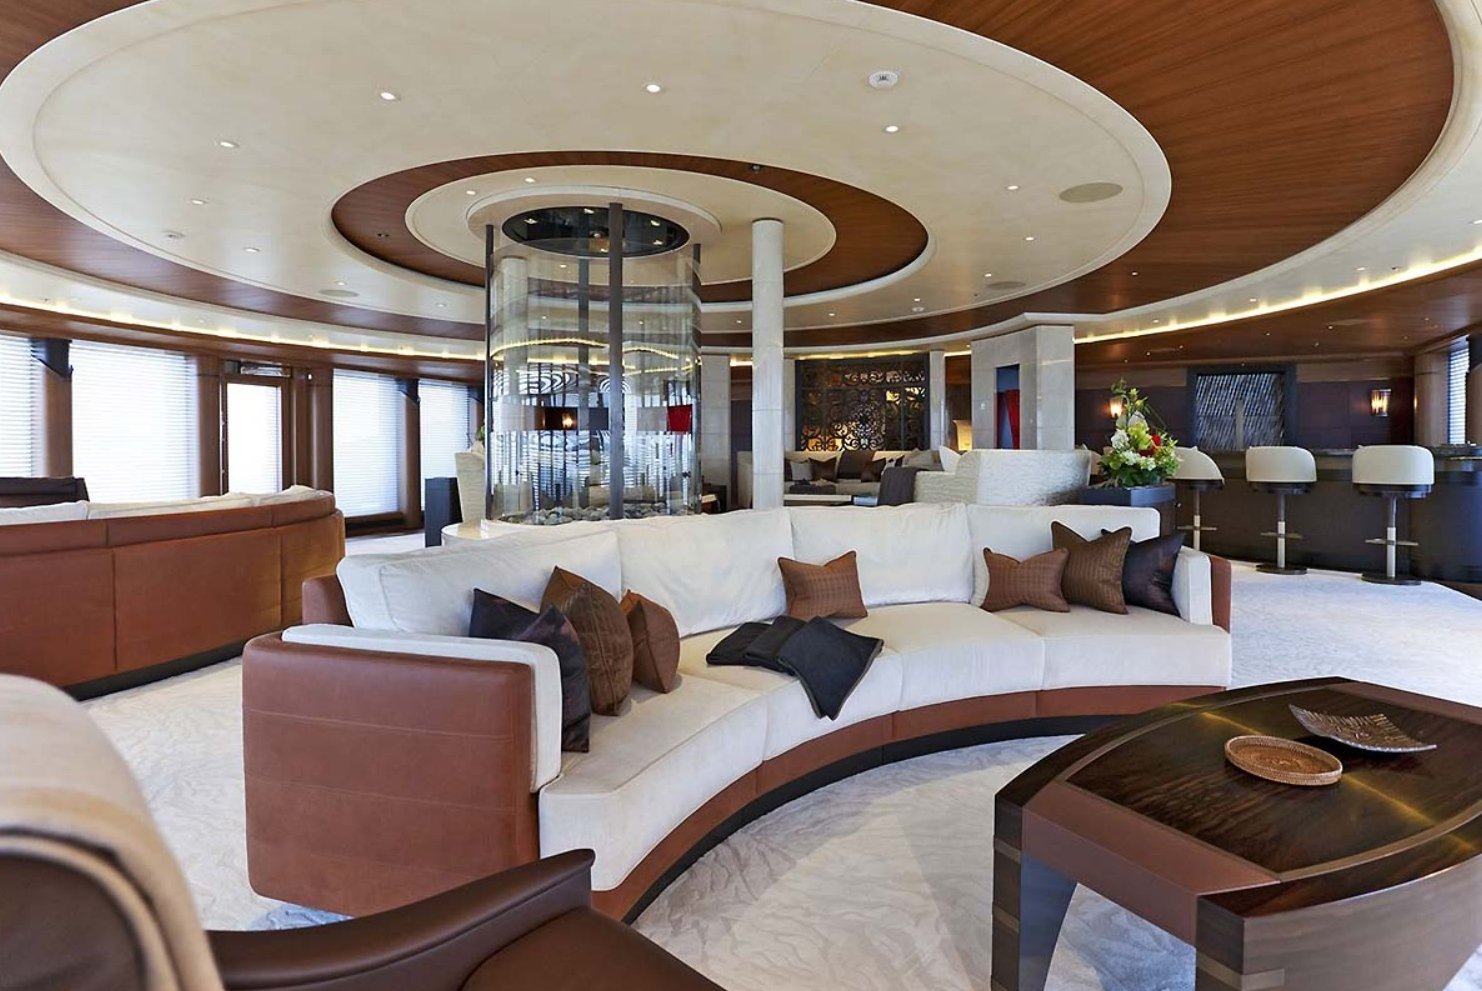 Interiore sereno dell'yacht